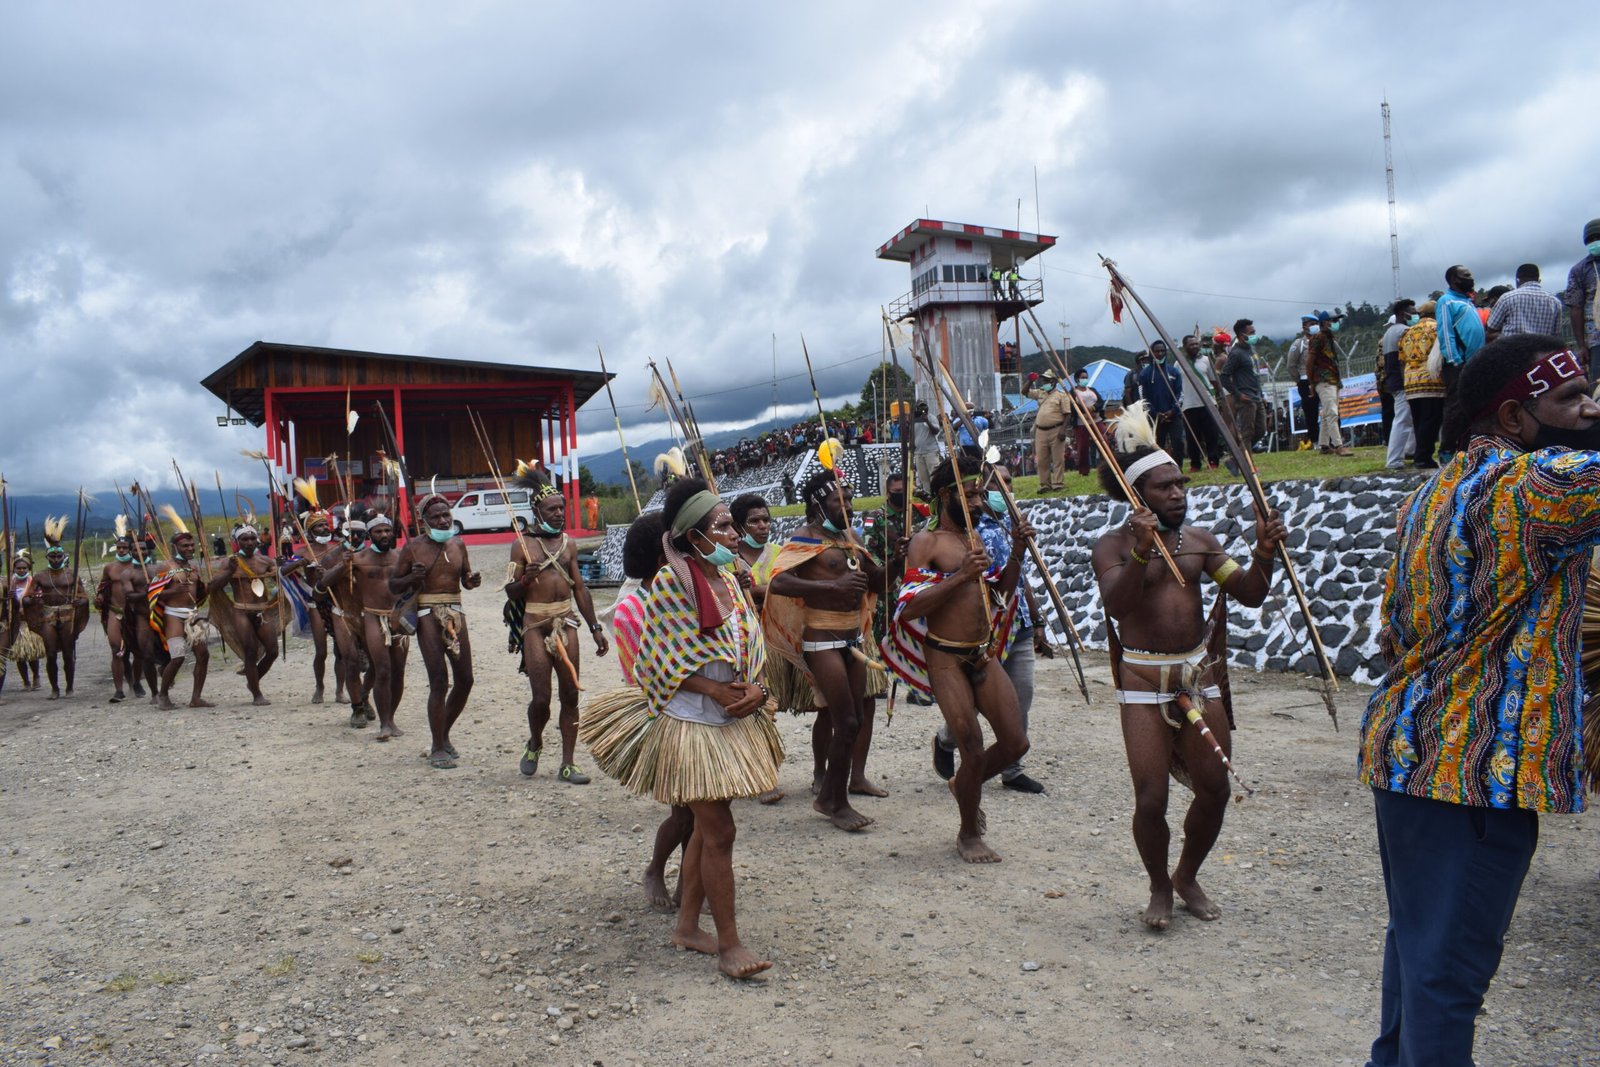 Mengenal Tarian Selamat Datang Khas Papua, Begini Sejarahnya